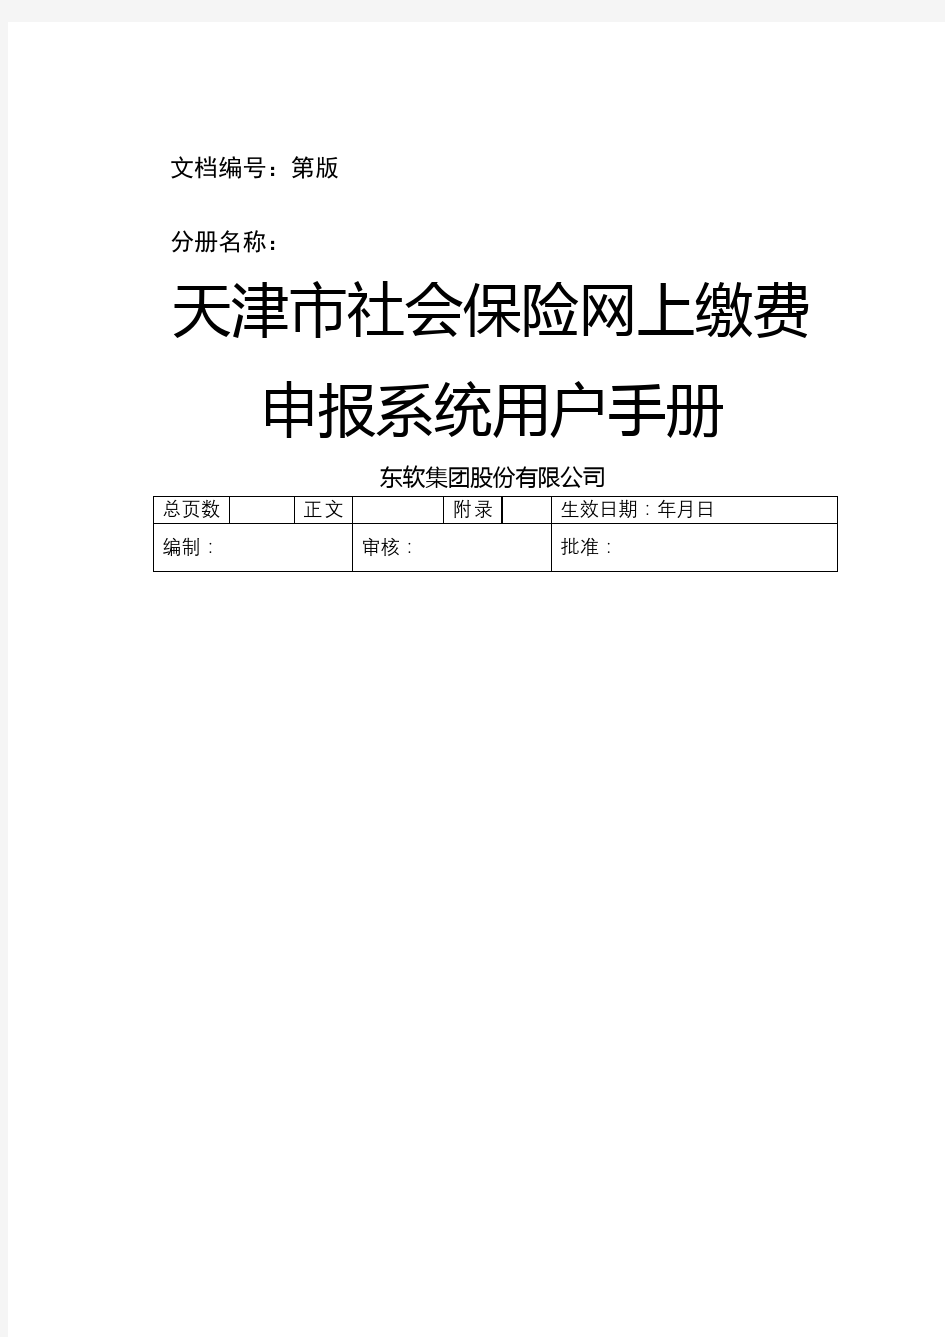 天津市社会保险网上缴费申报系统用户手册